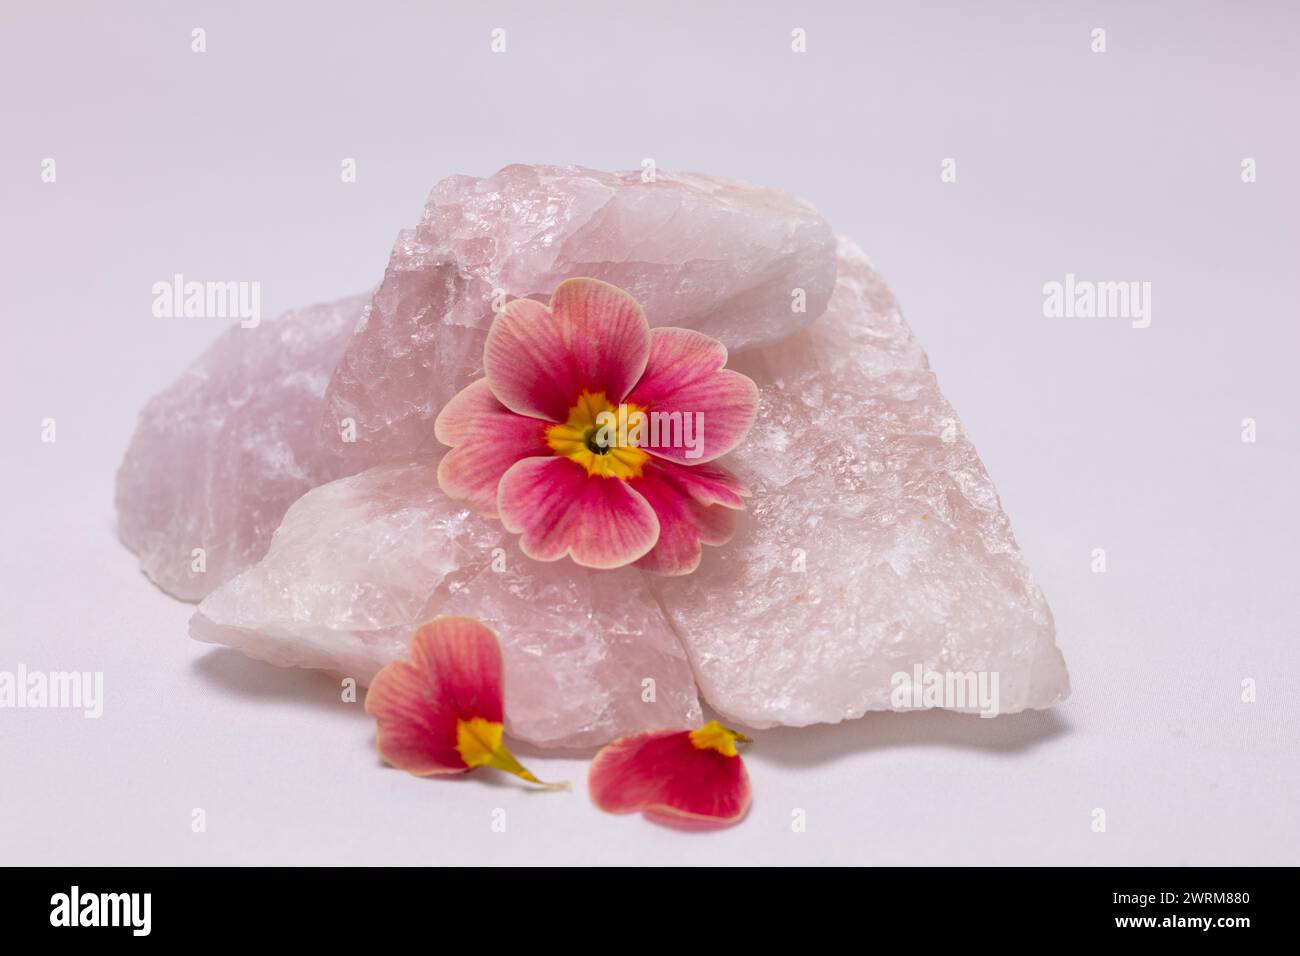 Rose Morn Petunie Blume mit gefallenen Blüten, die Rosenquarzgestein vor einem hellen Hintergrund hochauflösenden Studio-Bild teilen Stockfoto